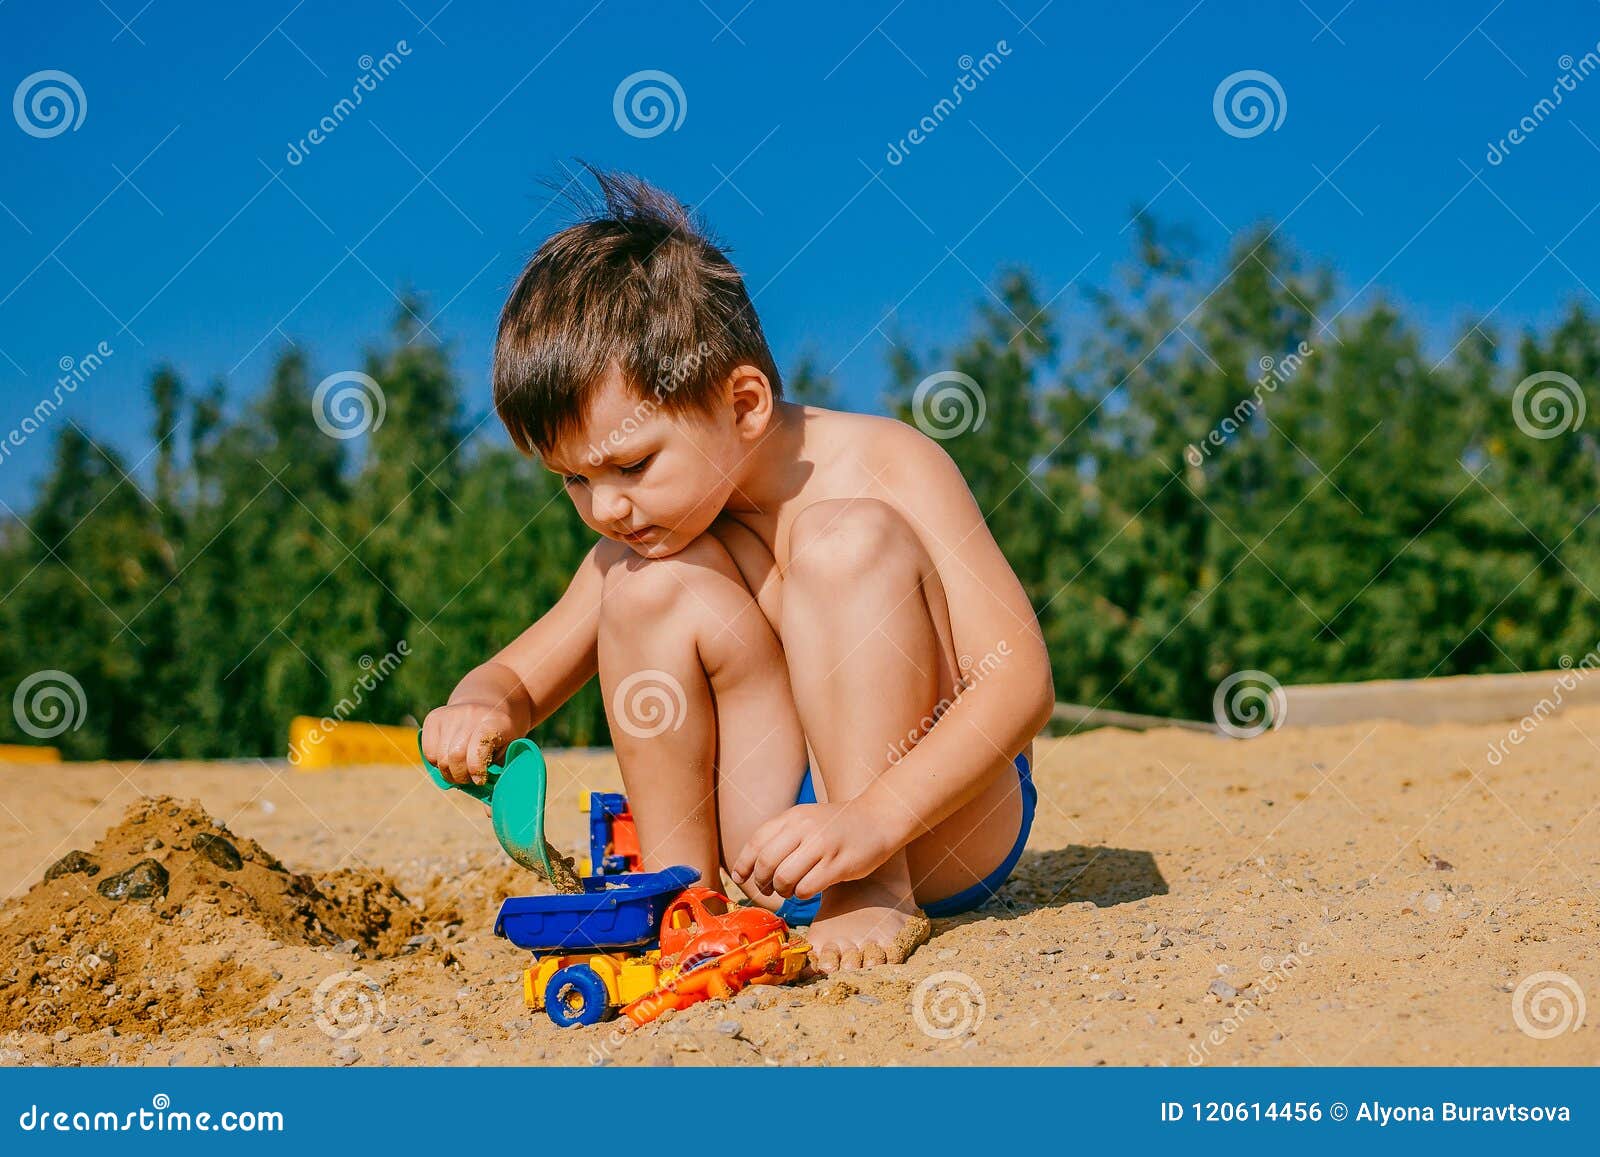 порно маленькие мальчики пляж фото 100